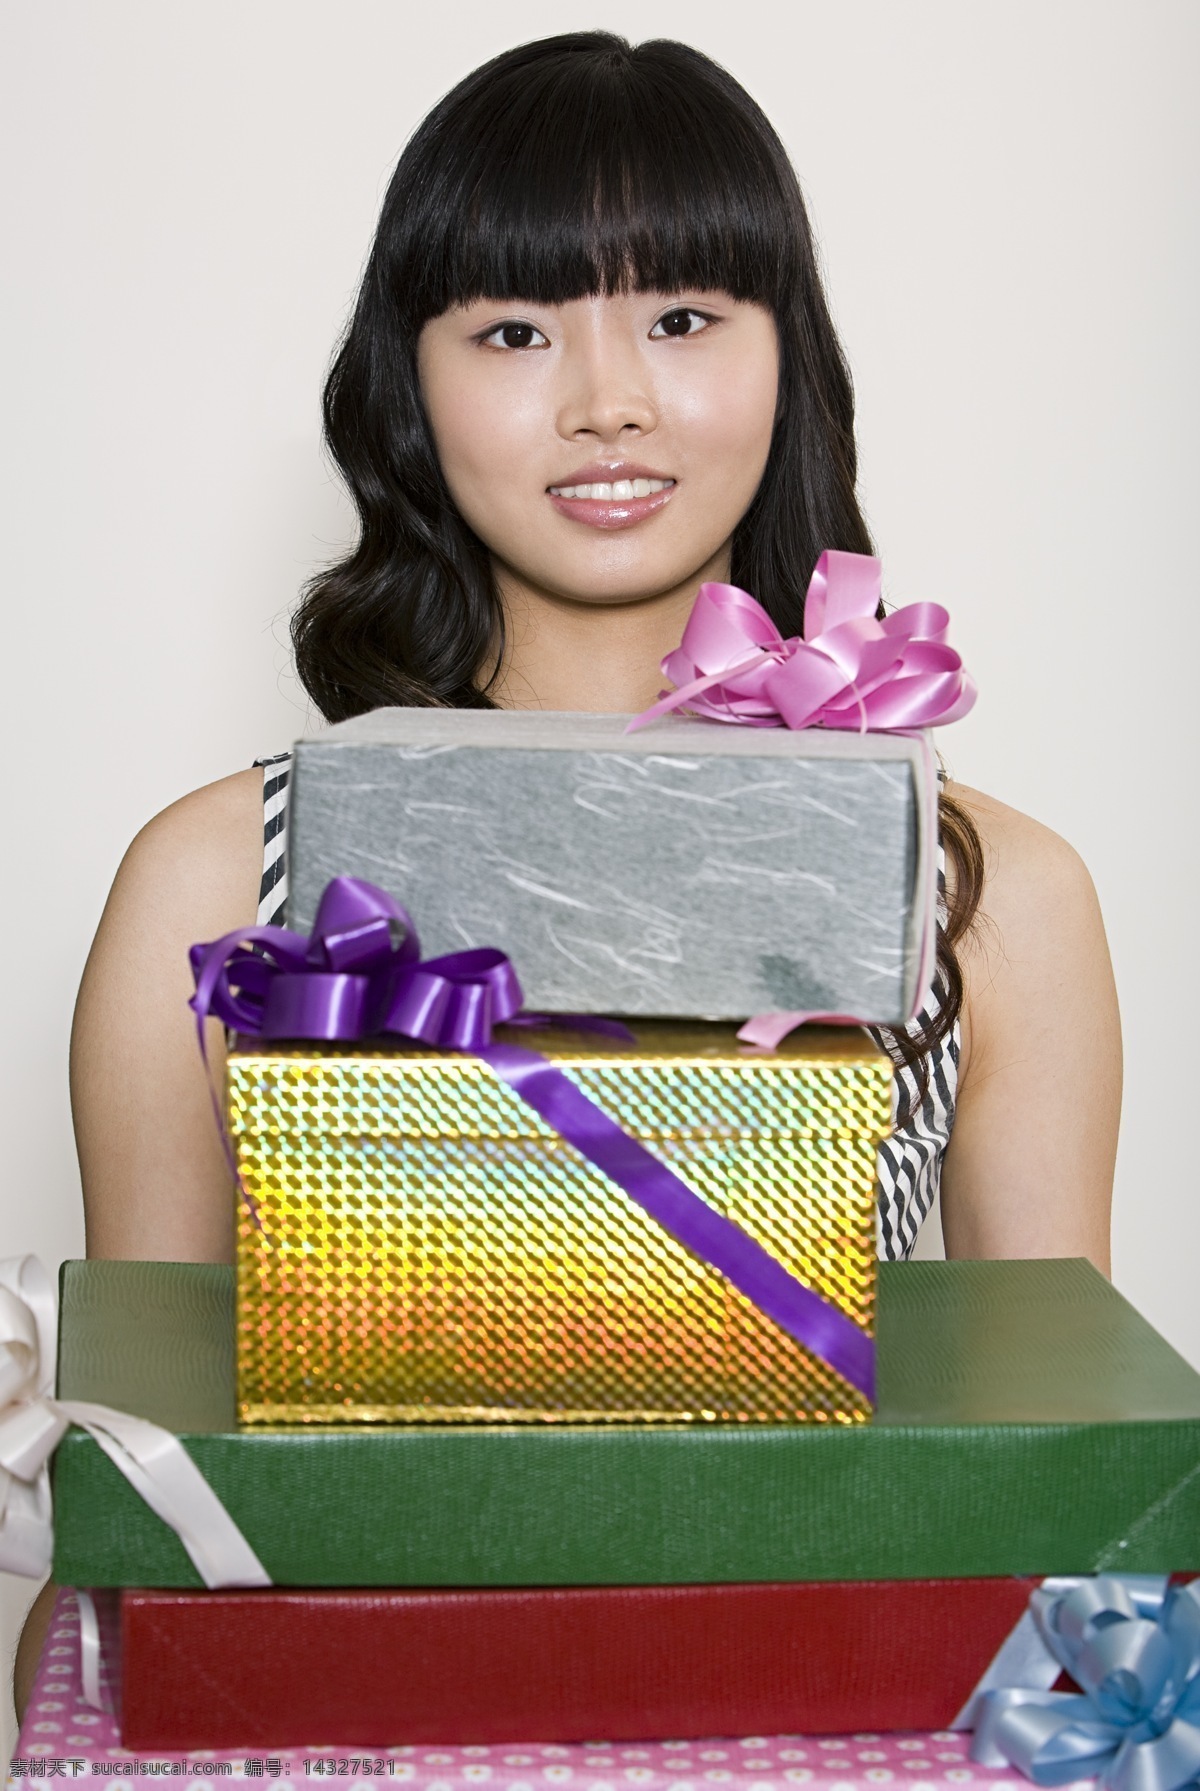 气质 女人 许多 礼品盒 美女 微笑 卷发 气质女人 礼物 许多礼品 拿着 商品 包装 高清图片 生活人物 人物图片